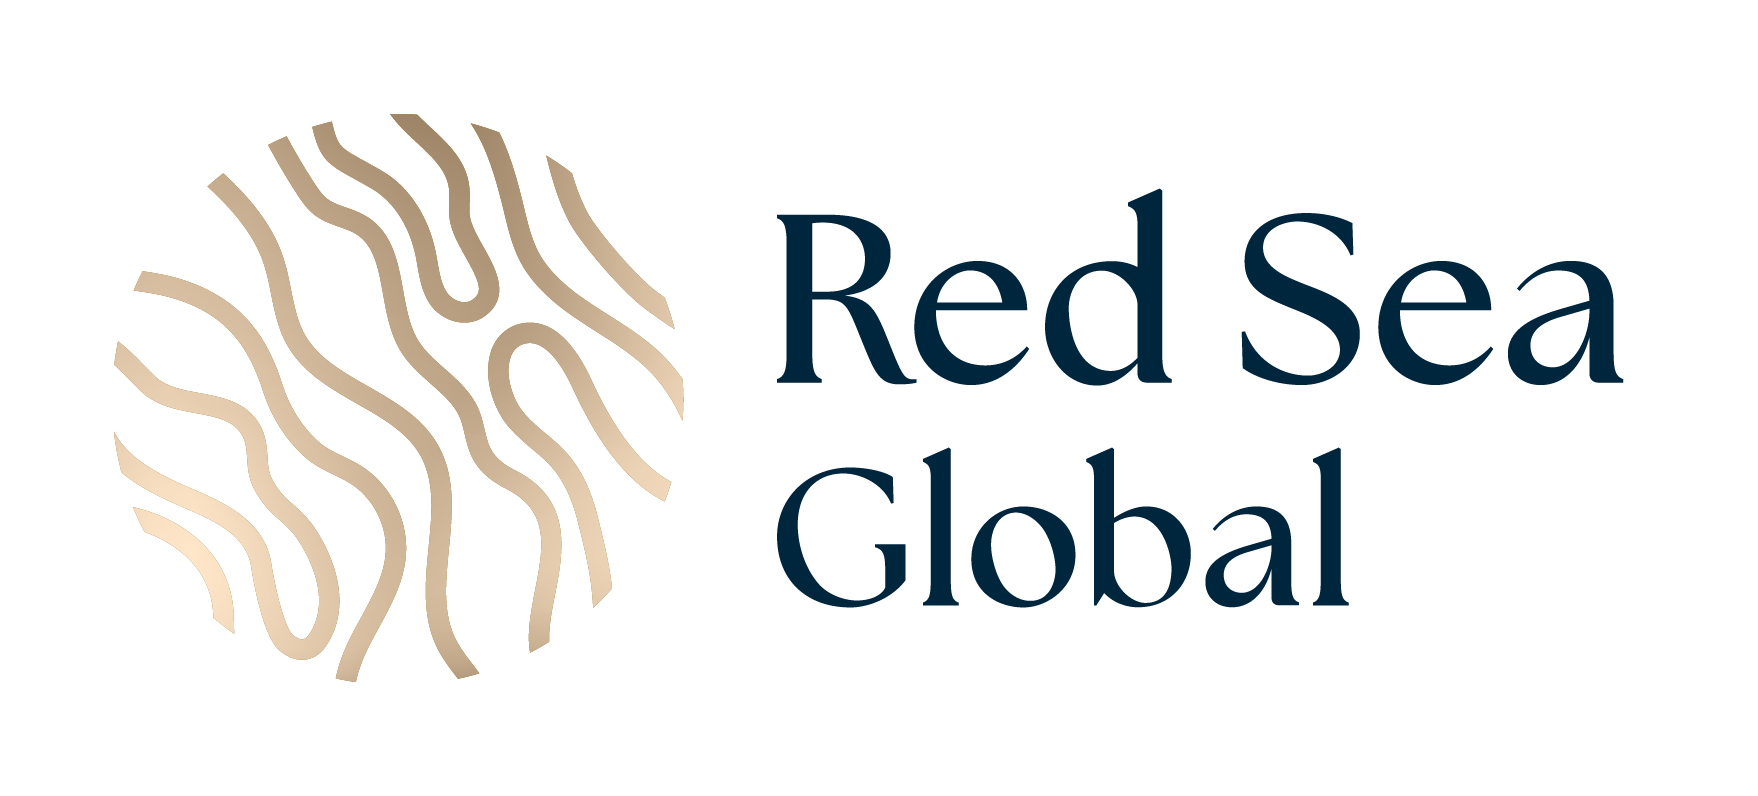 Red Sea Global